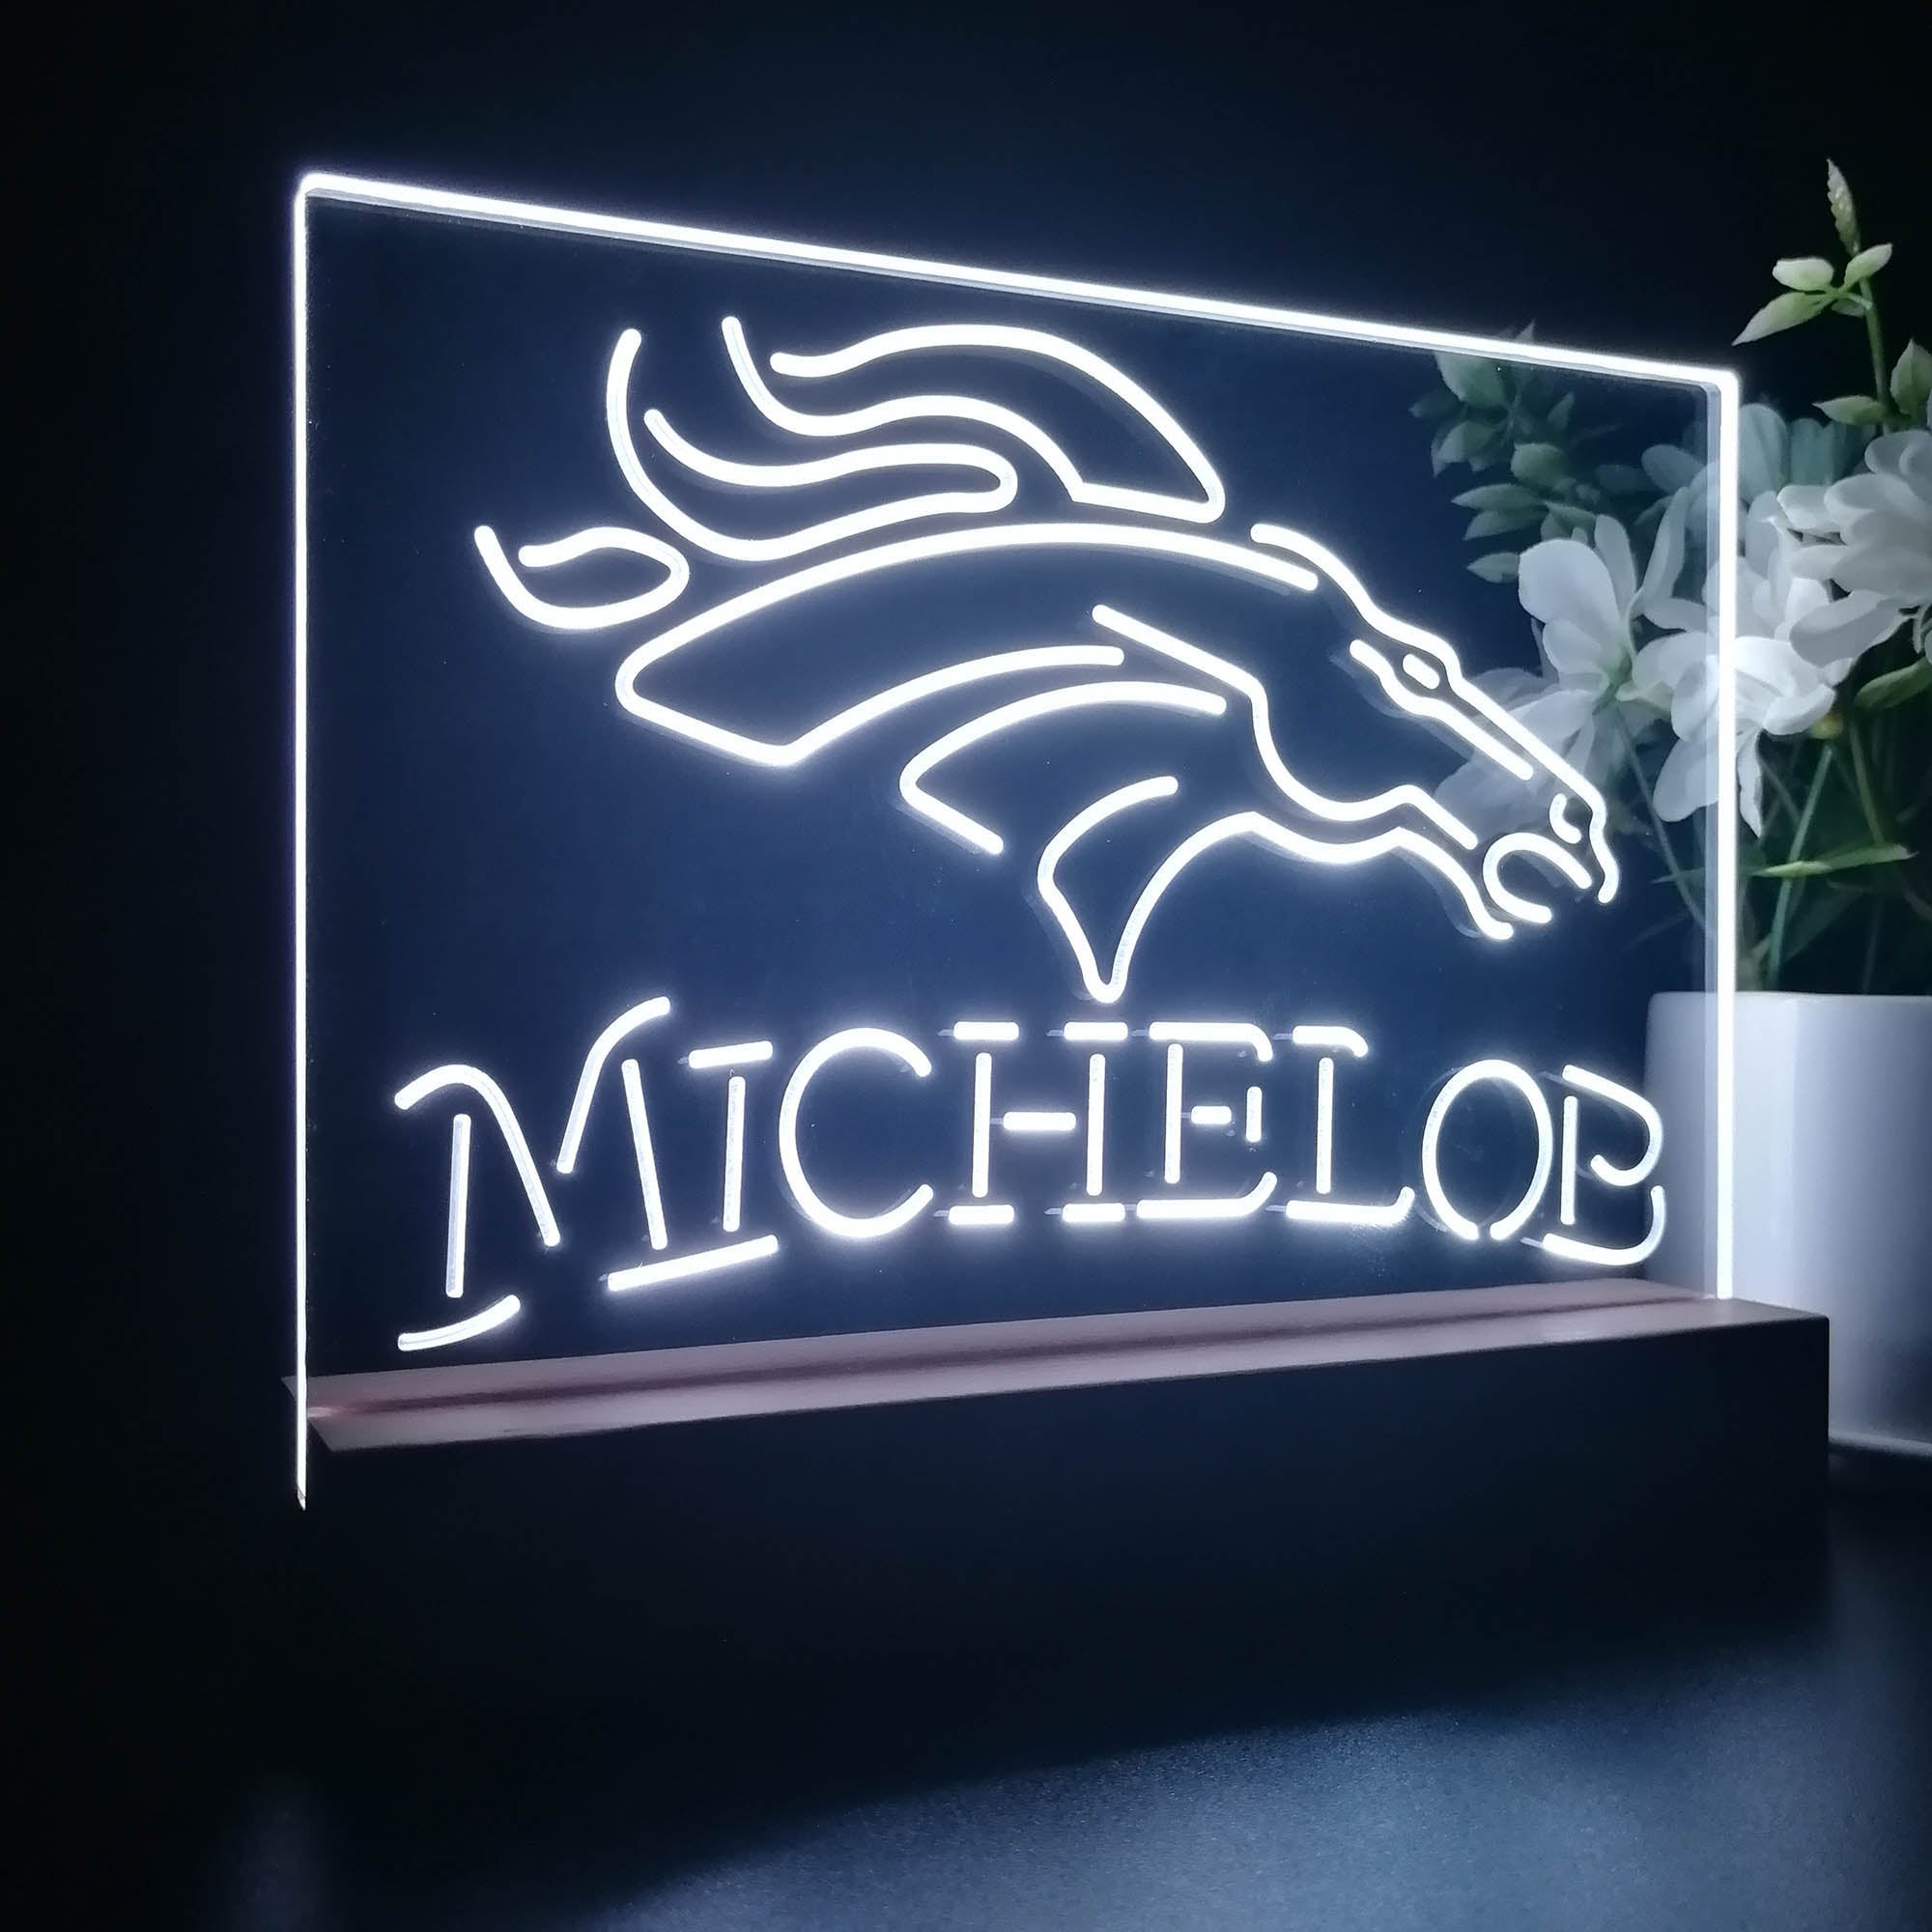 Michelob Bar Denver Broncos Night Light LED Sign